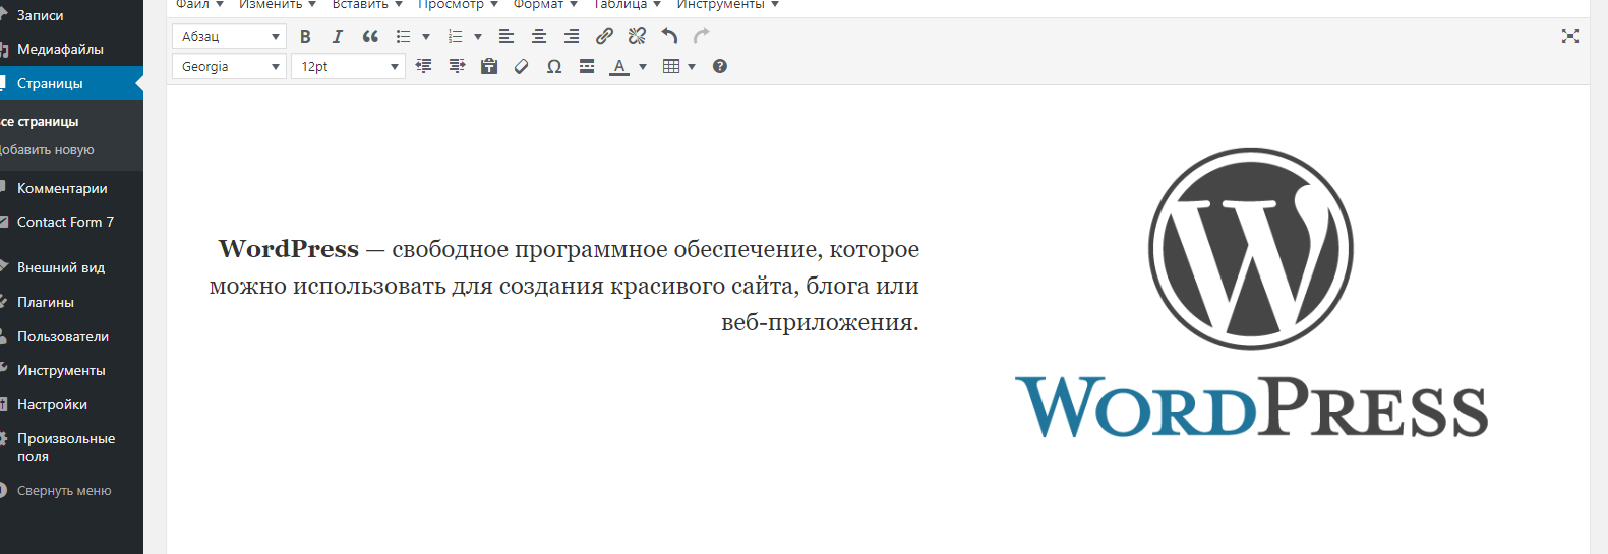 Разработка сайтов wordpress cms